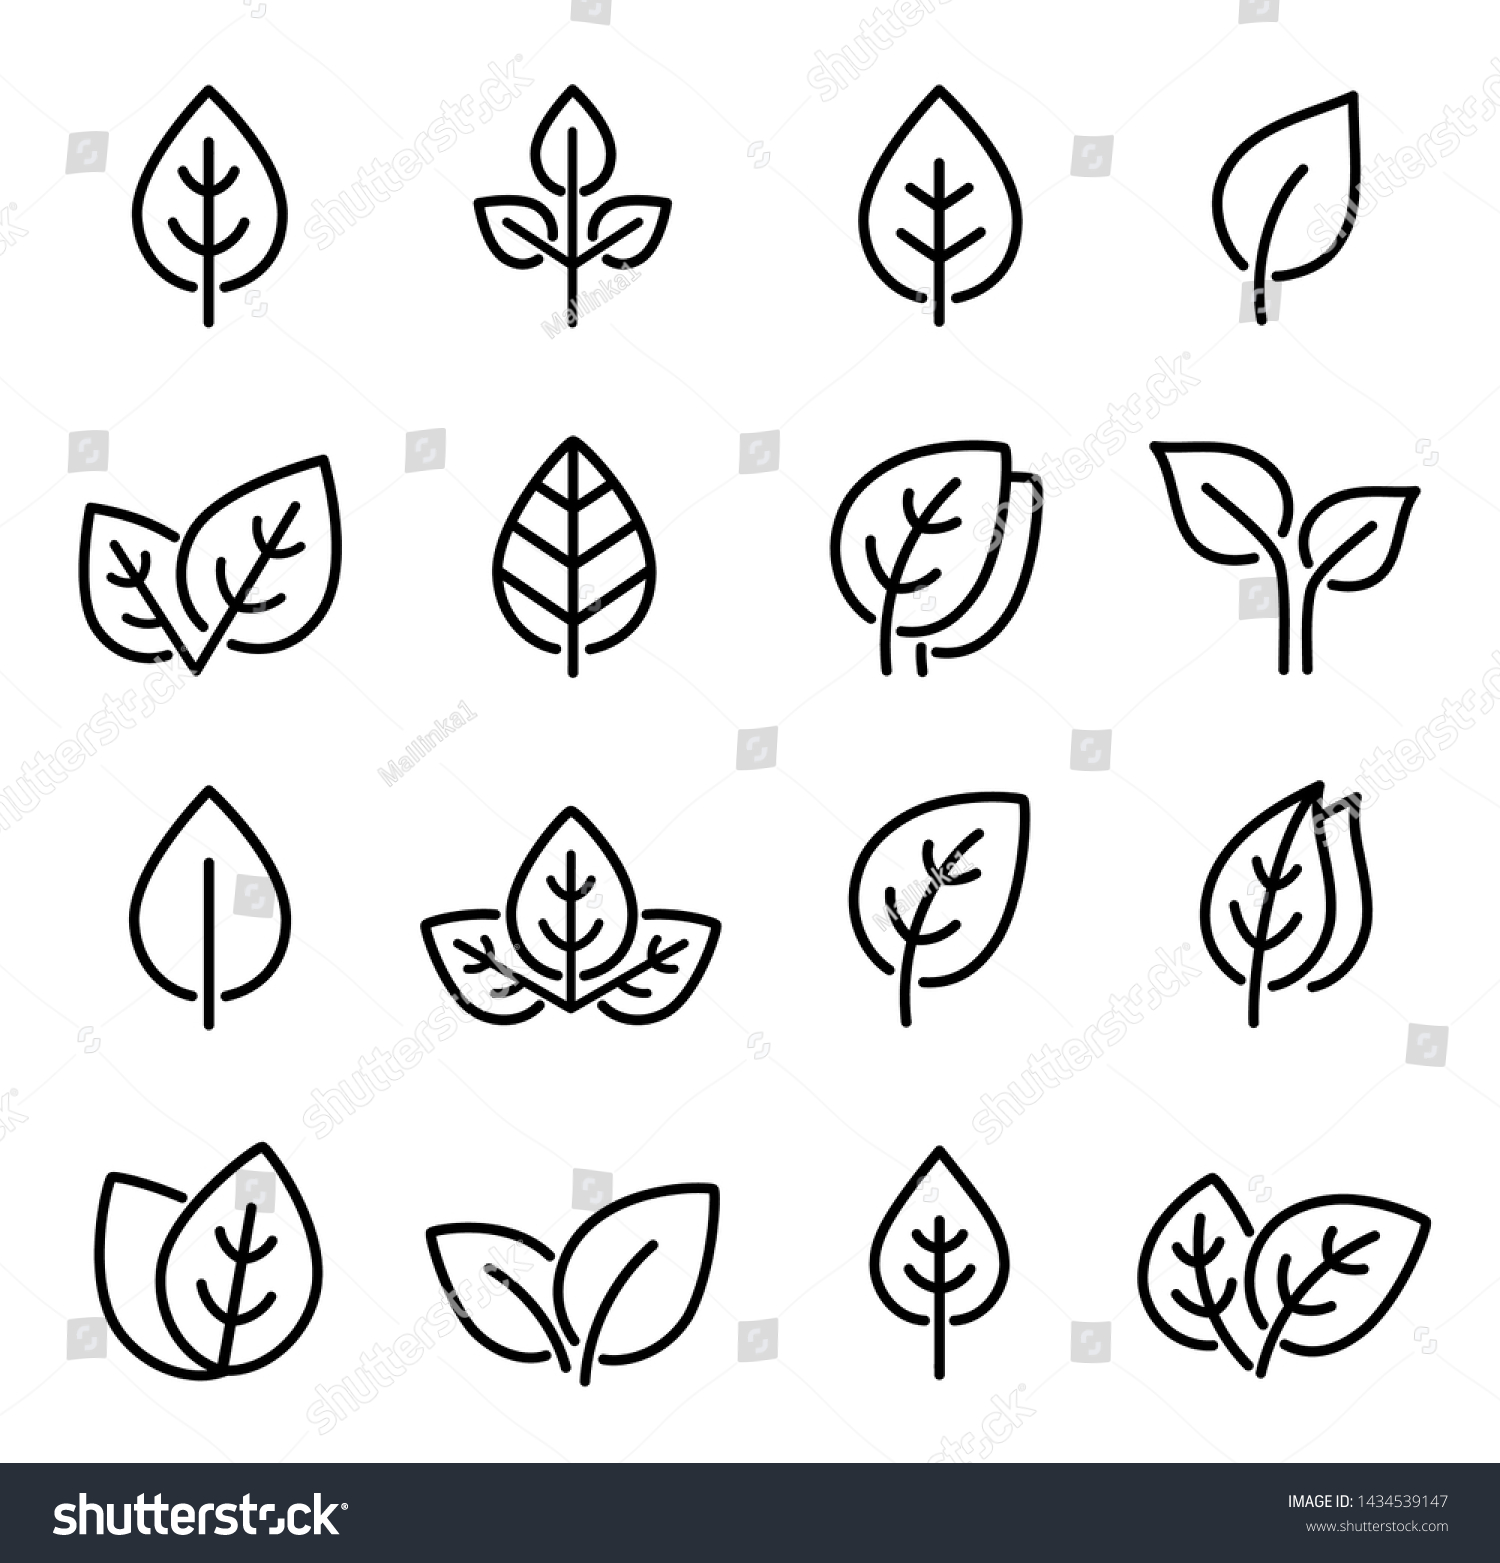 SVG of eco set of black line leaf icons on white background svg